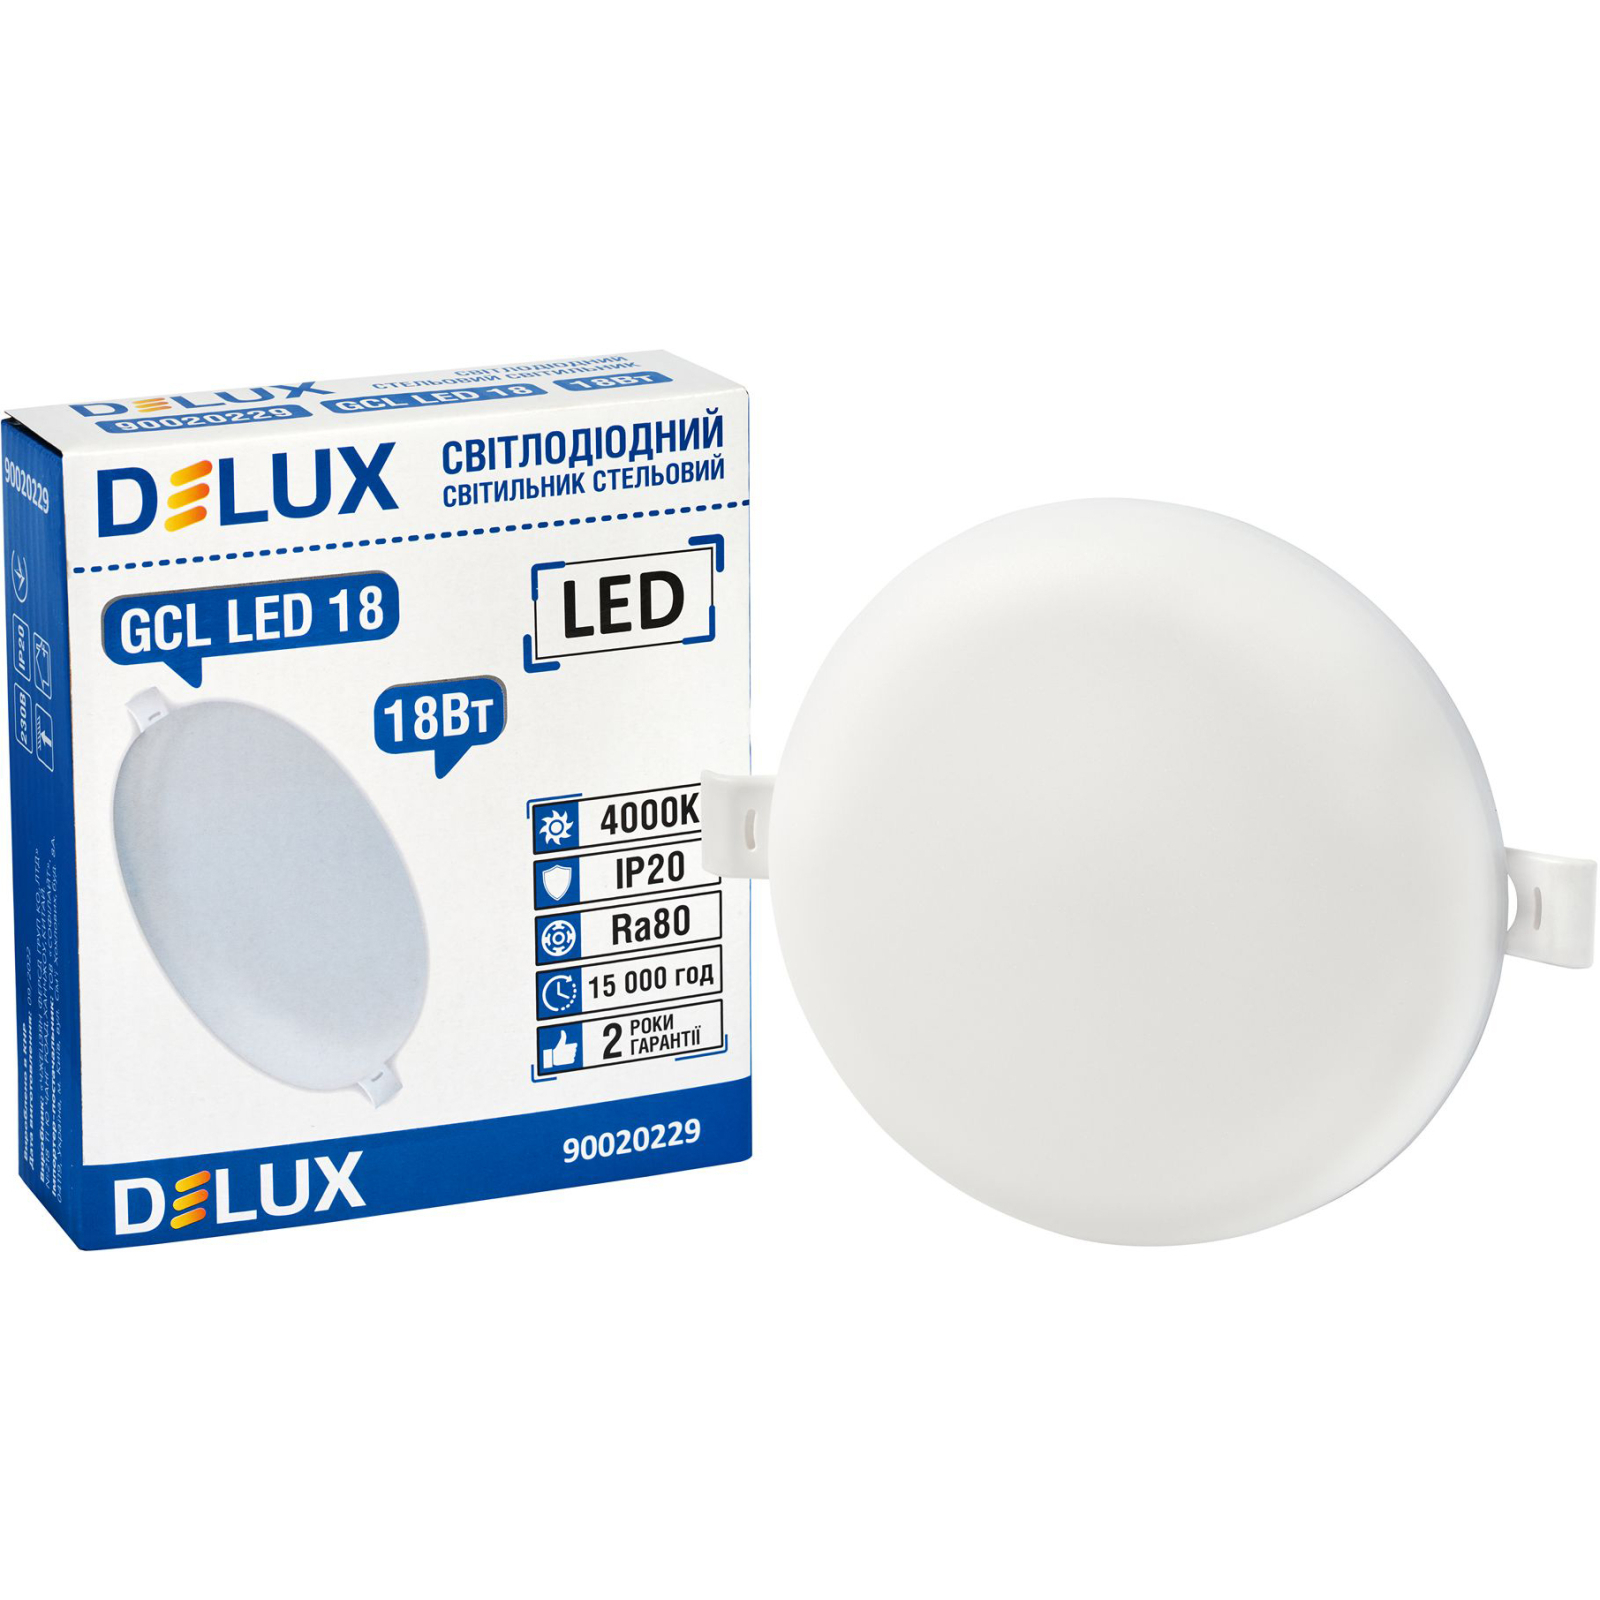 Світильник Delux GCL LED 18 4000К 18Вт 230В ROUND (90020229) зображення 2